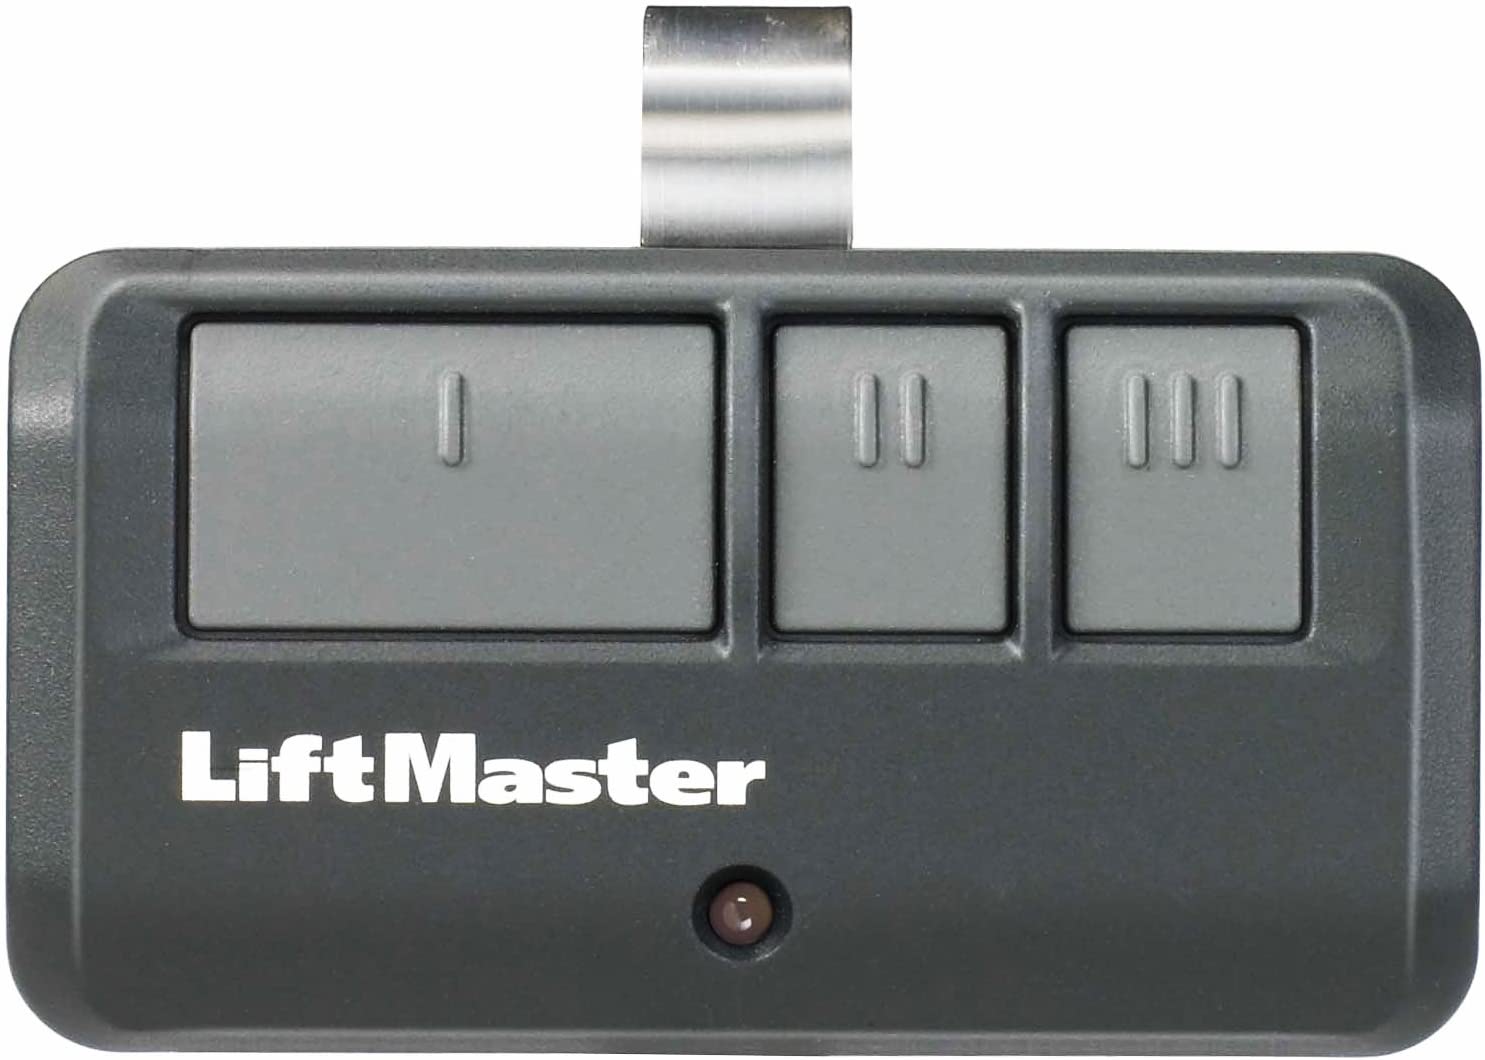 How To Program LiftMaster Garage Door Opener Remote - How To Program LiftMaster Garage Door Opener Remote